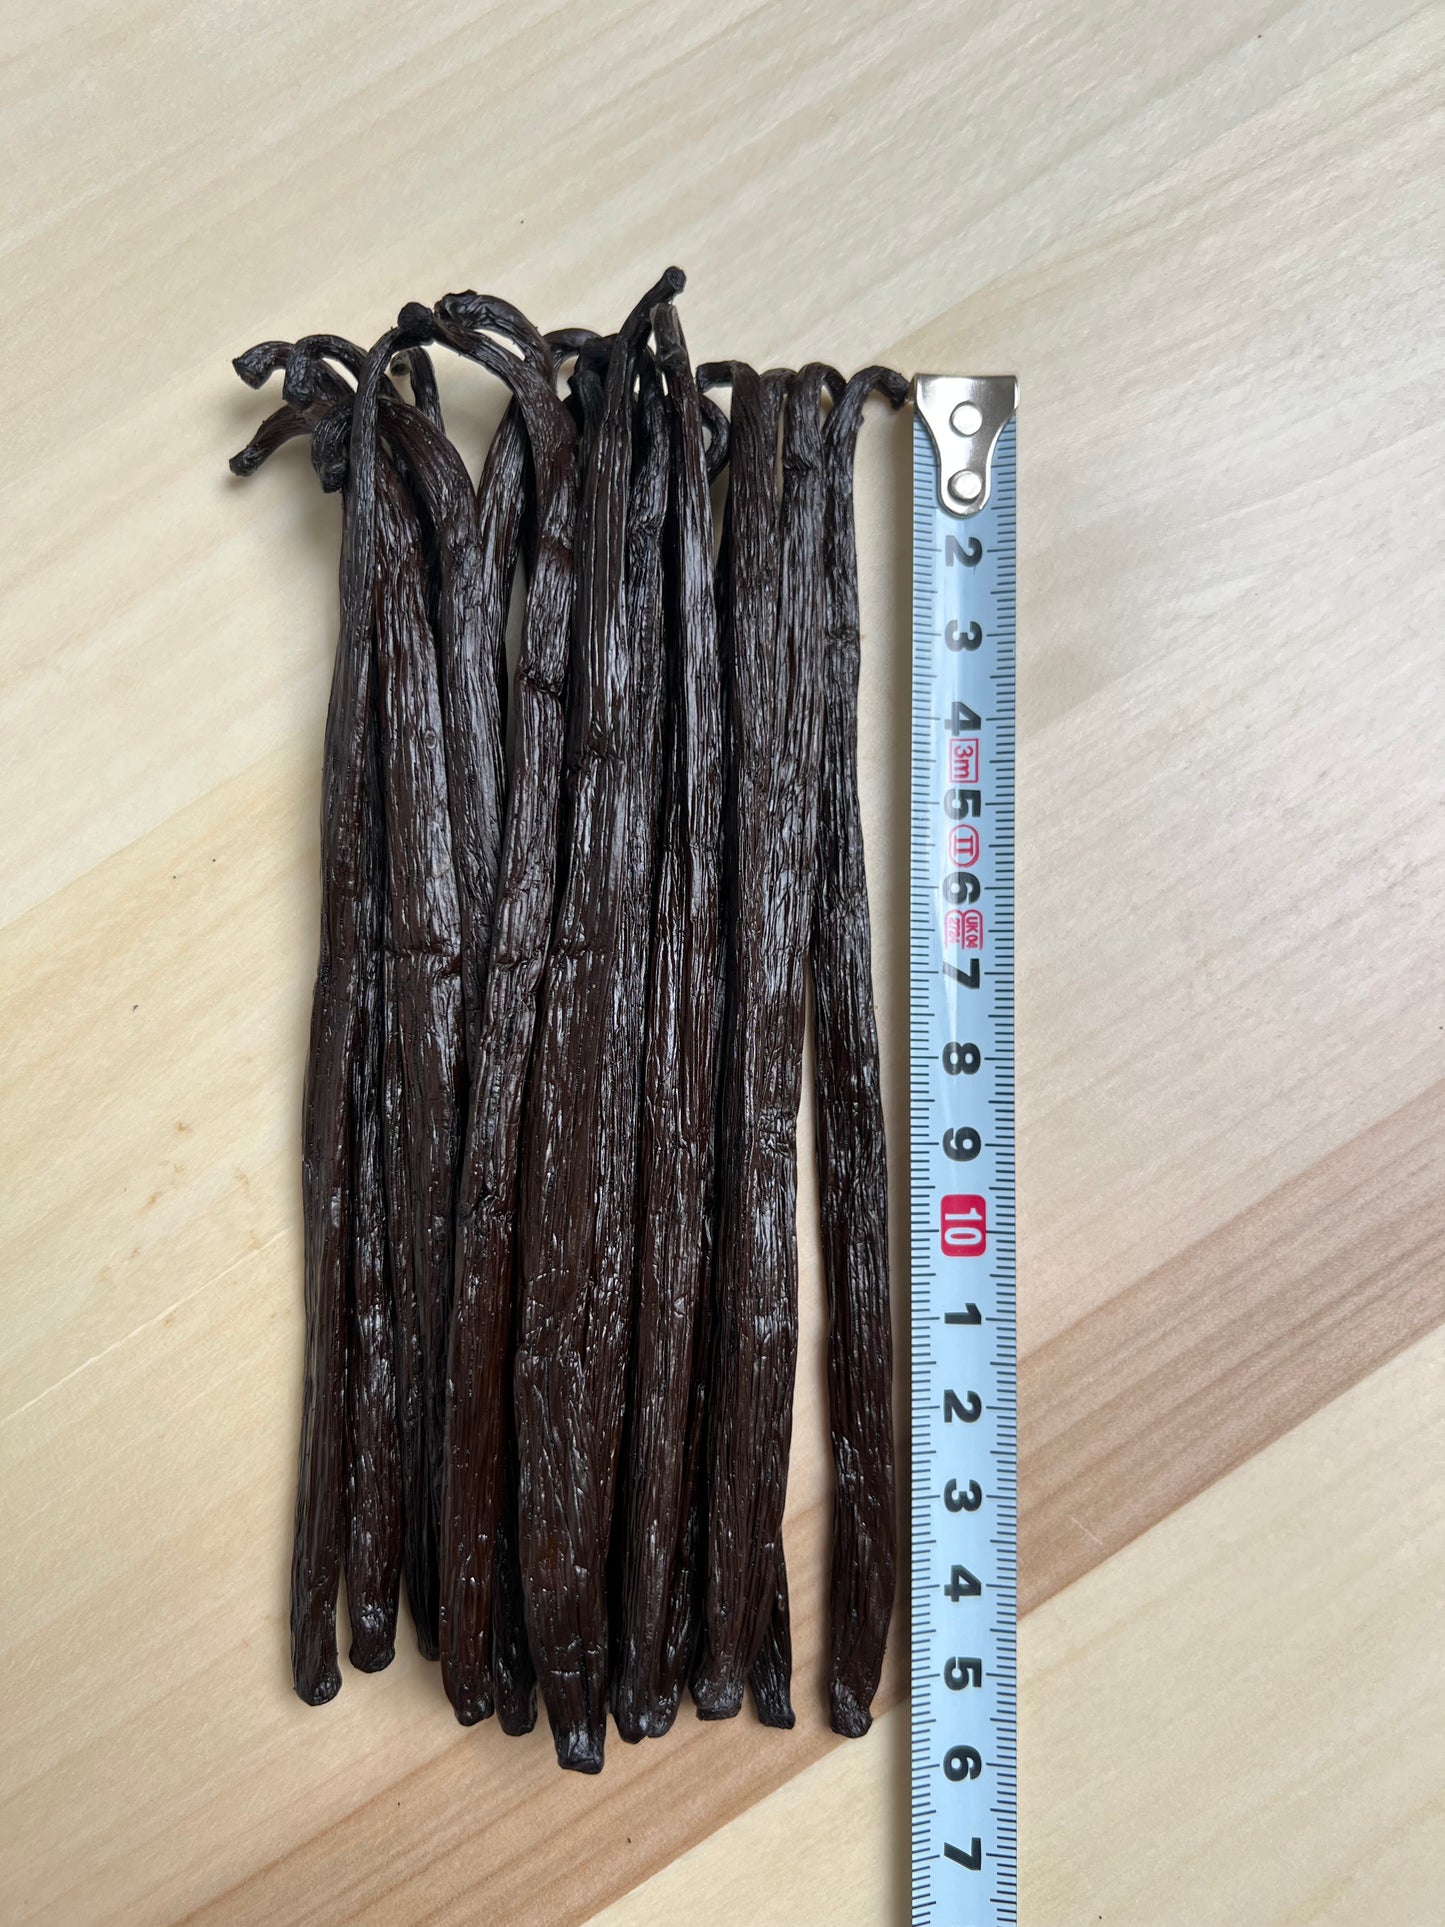 250g de gousses de Vanille Bourbon qualité Gourmet de Madagascar